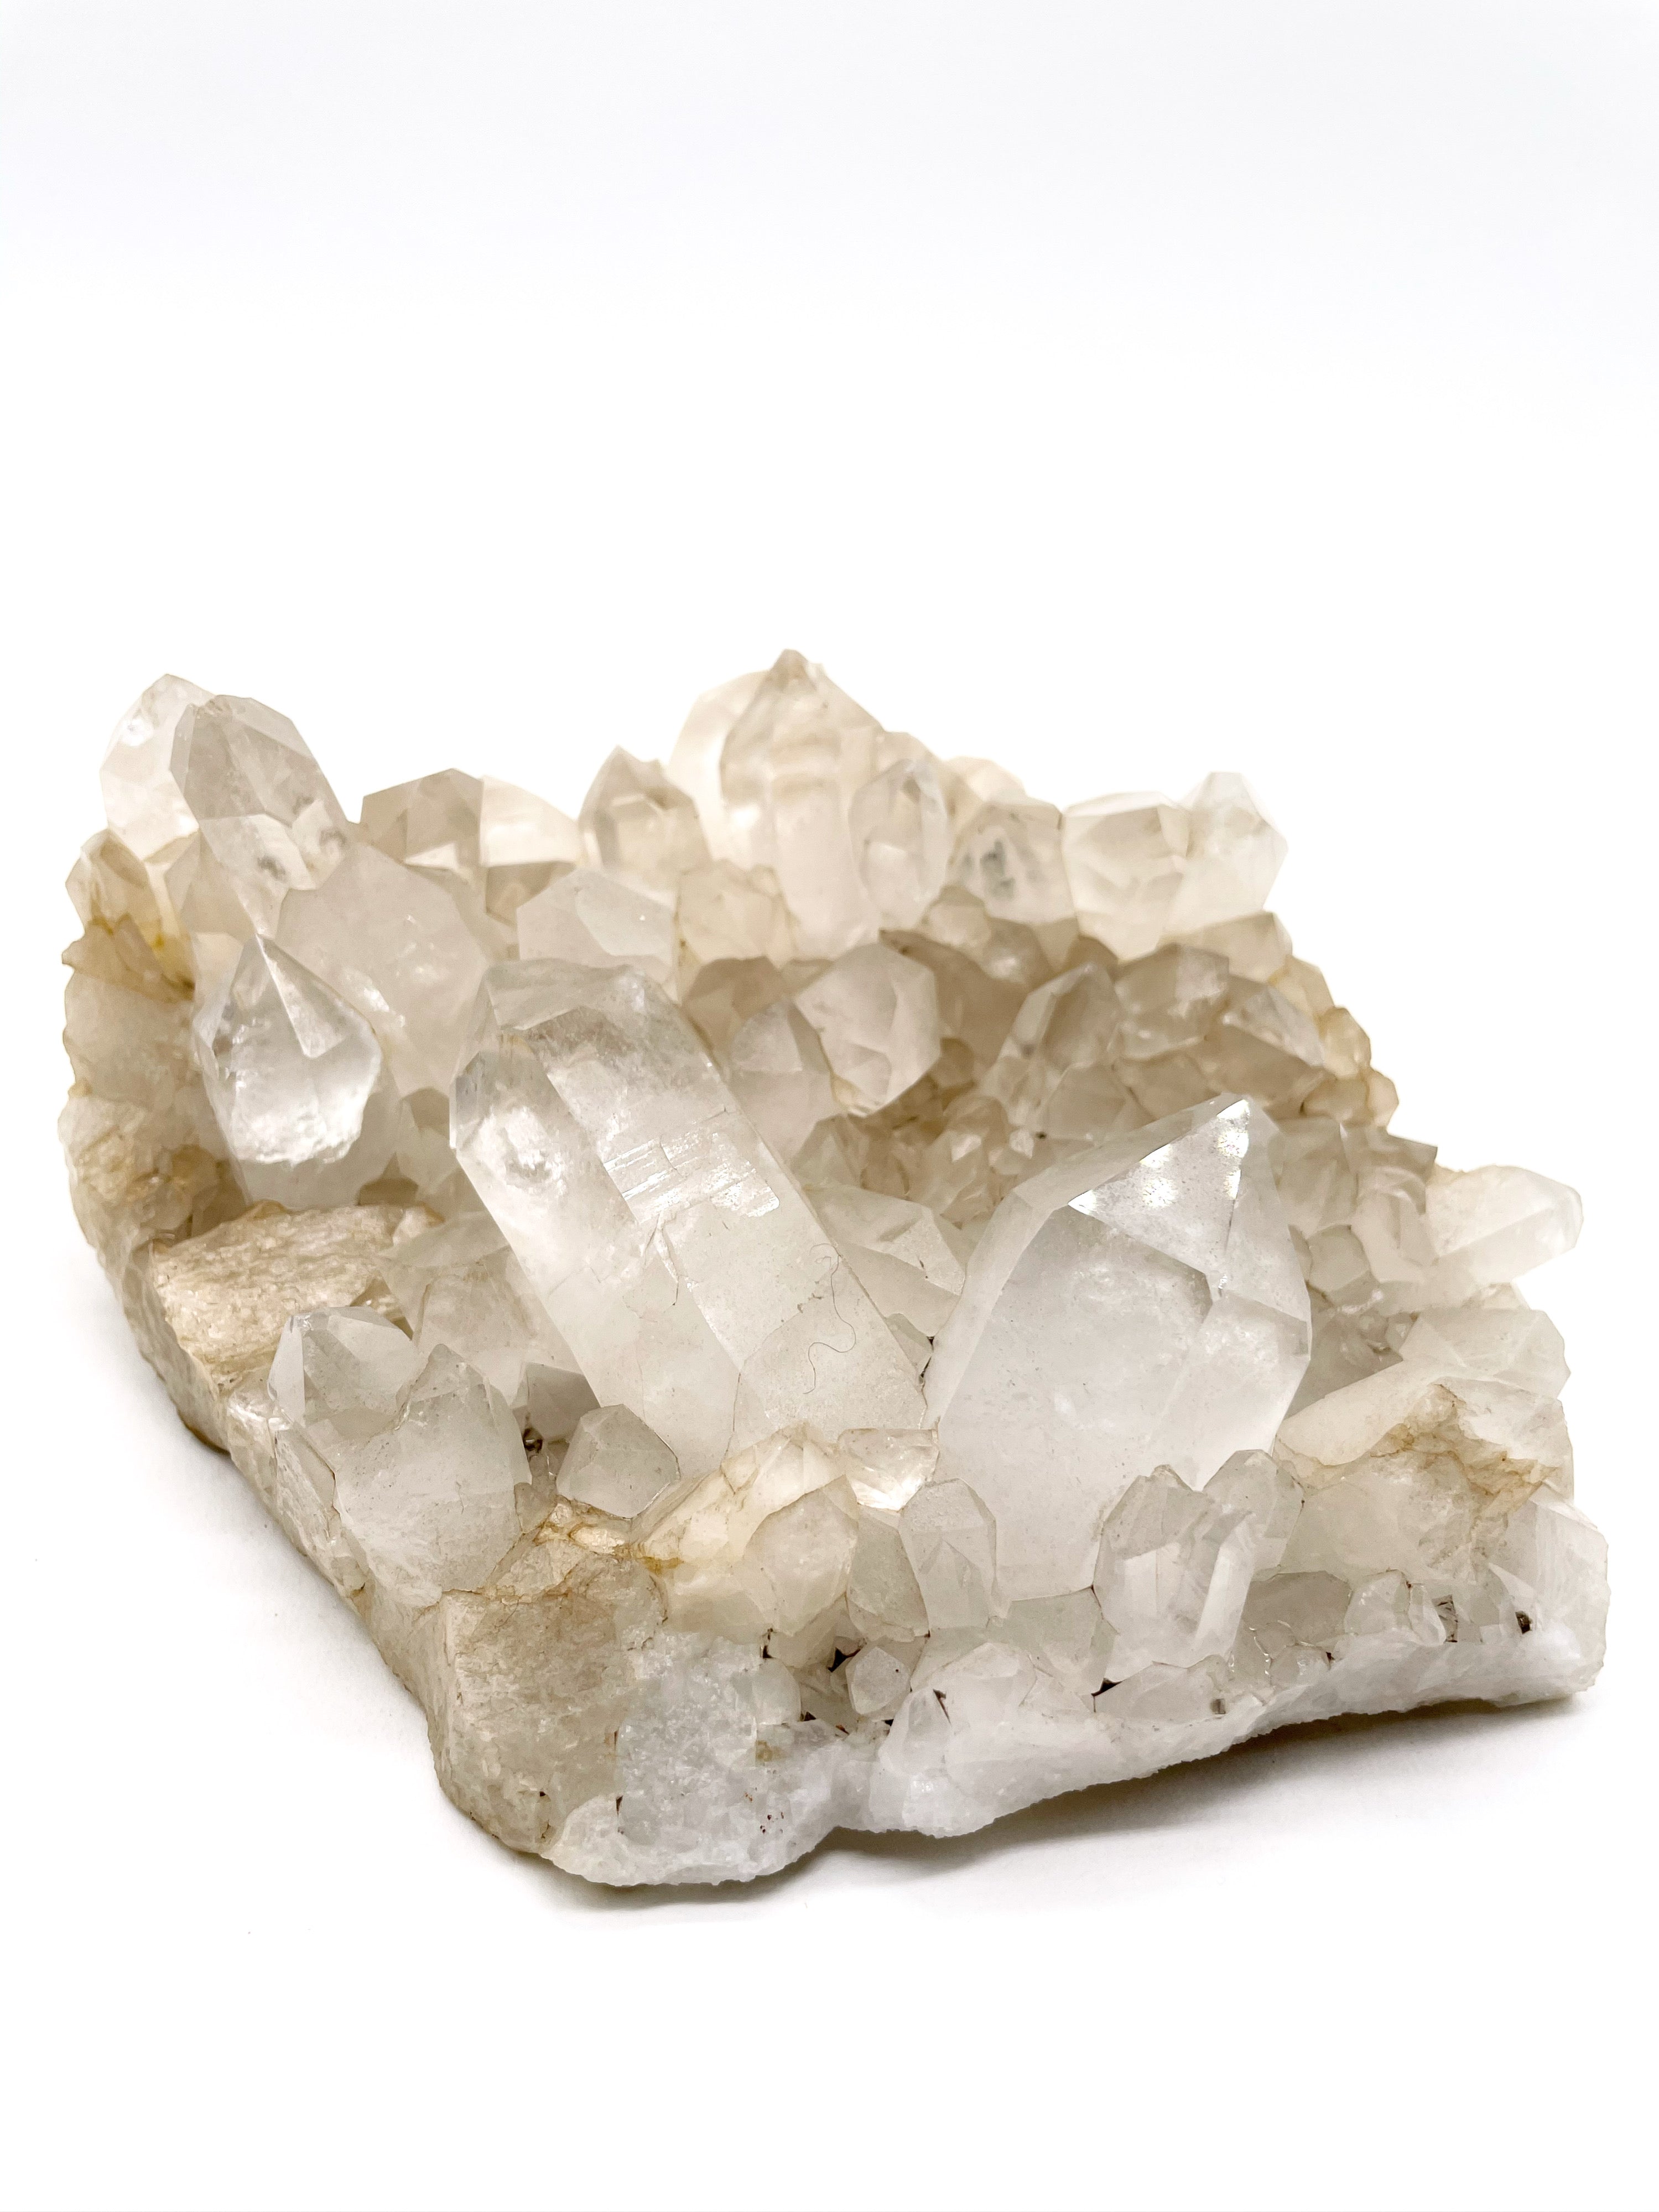 Druse de quartz 4385 carats